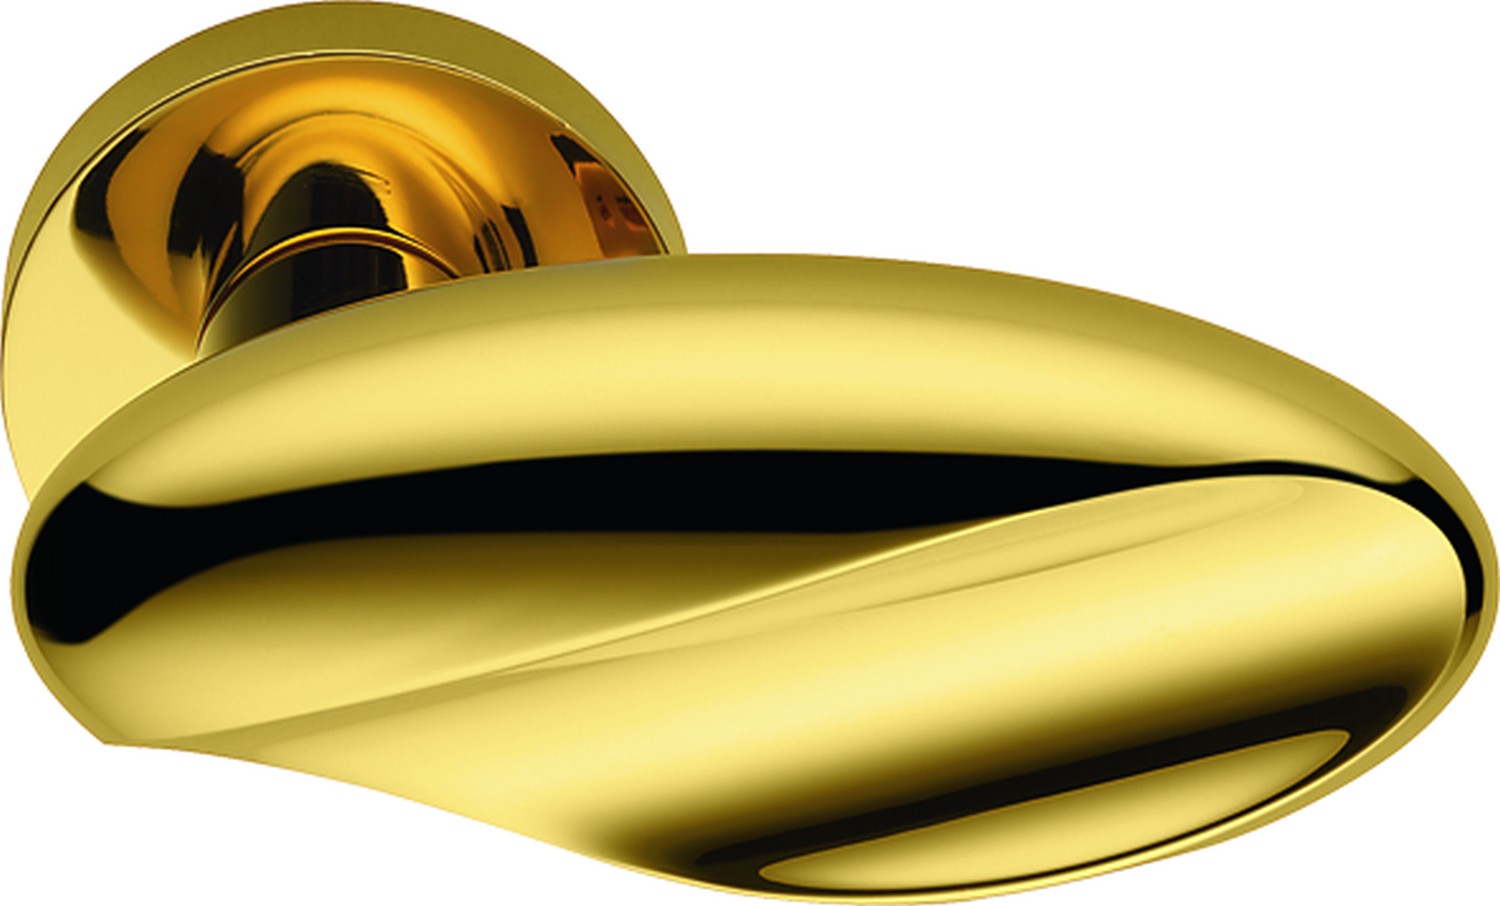 COLOMBO DESIGN -  Pomolo MOON ovale con quadro rosette e bocchette tonde foro patent - mat. OTTONE - col. HPS ZIRCONIUM GOLD - dim. Ø50